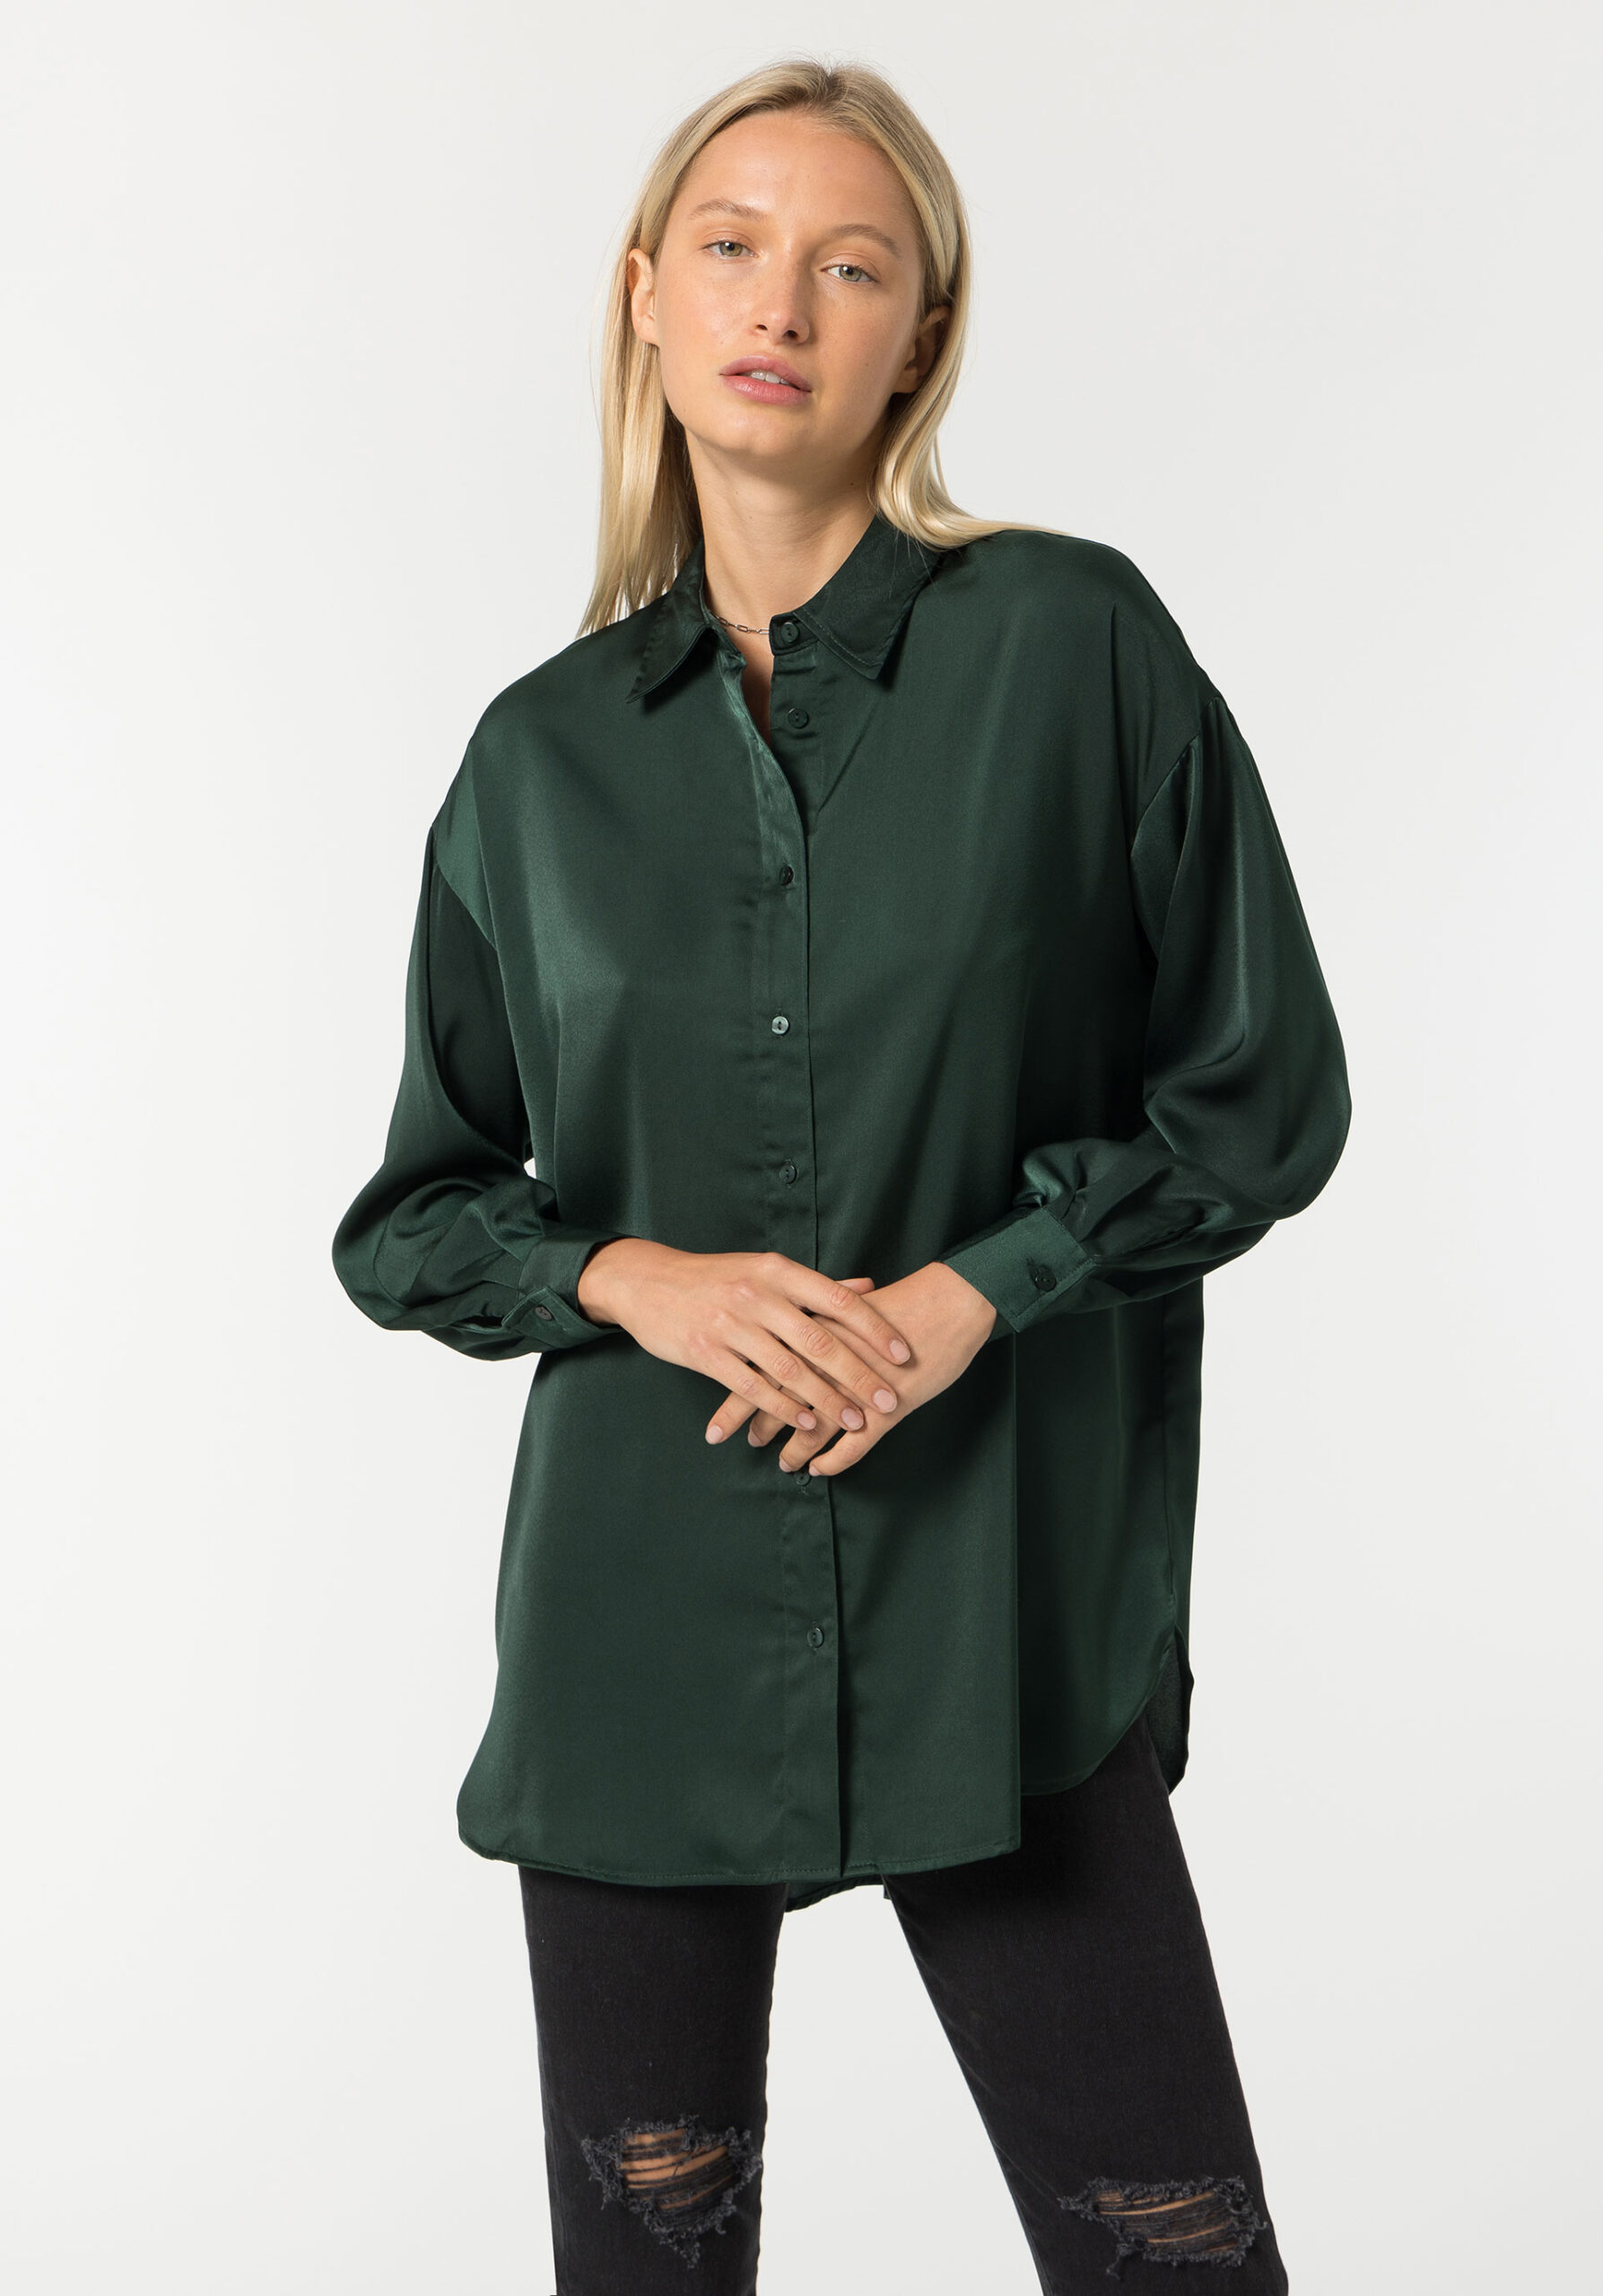 Camisa Fluida verde | K13 Makeover